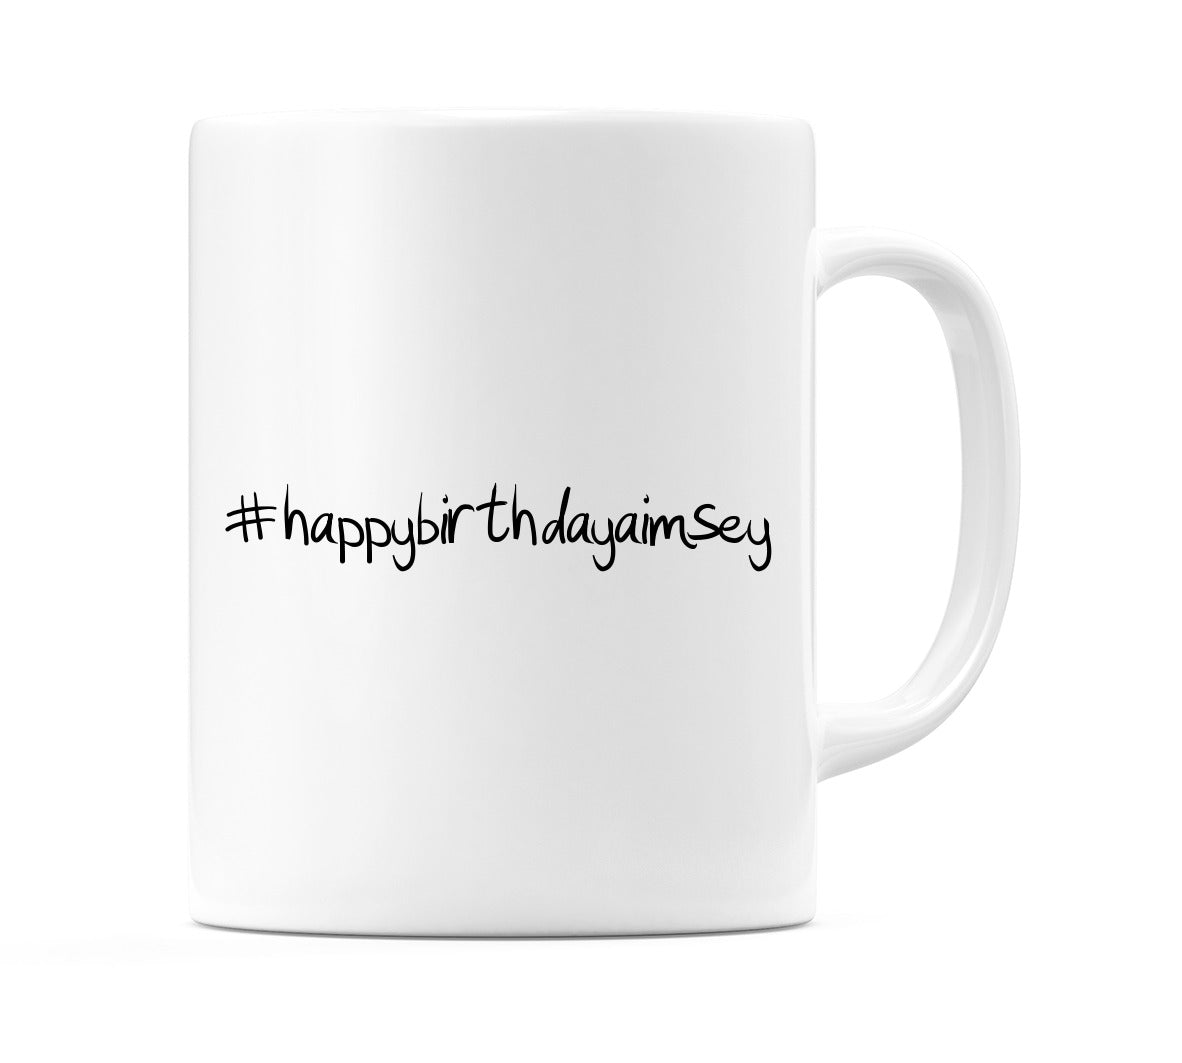 #happybirthdayaimsey Mug